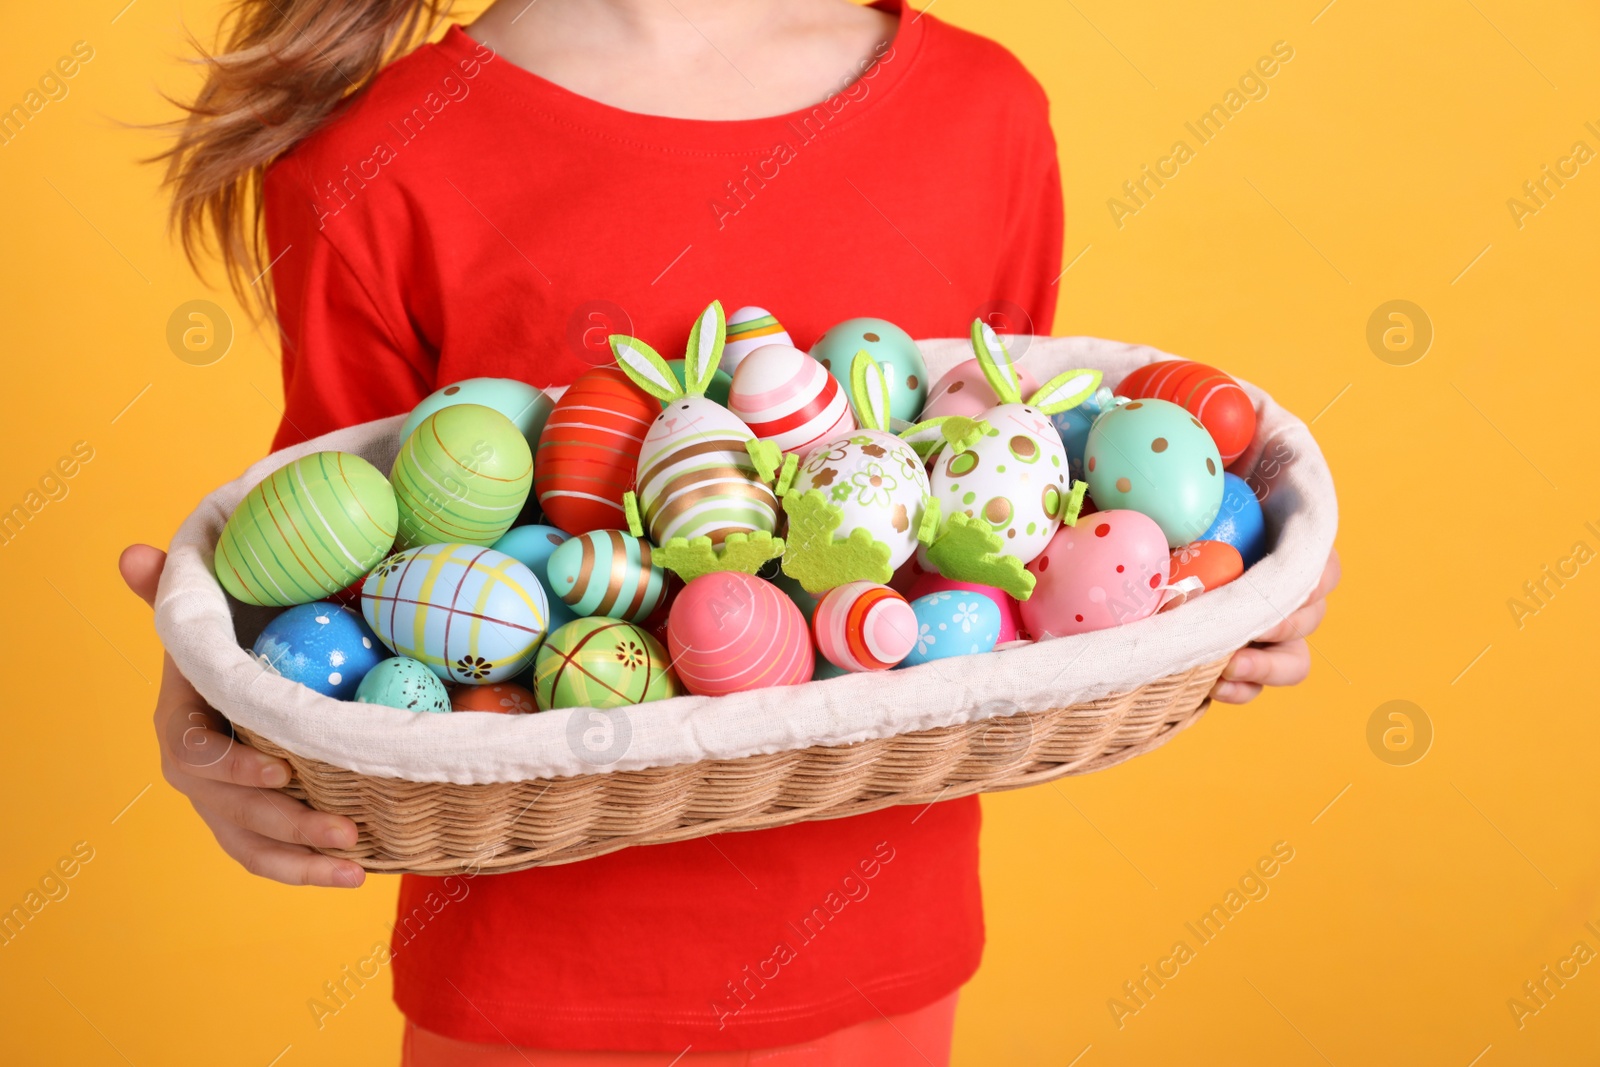 Photo of Little girl holding wicker basket full of Easter eggs on orange background, closeup